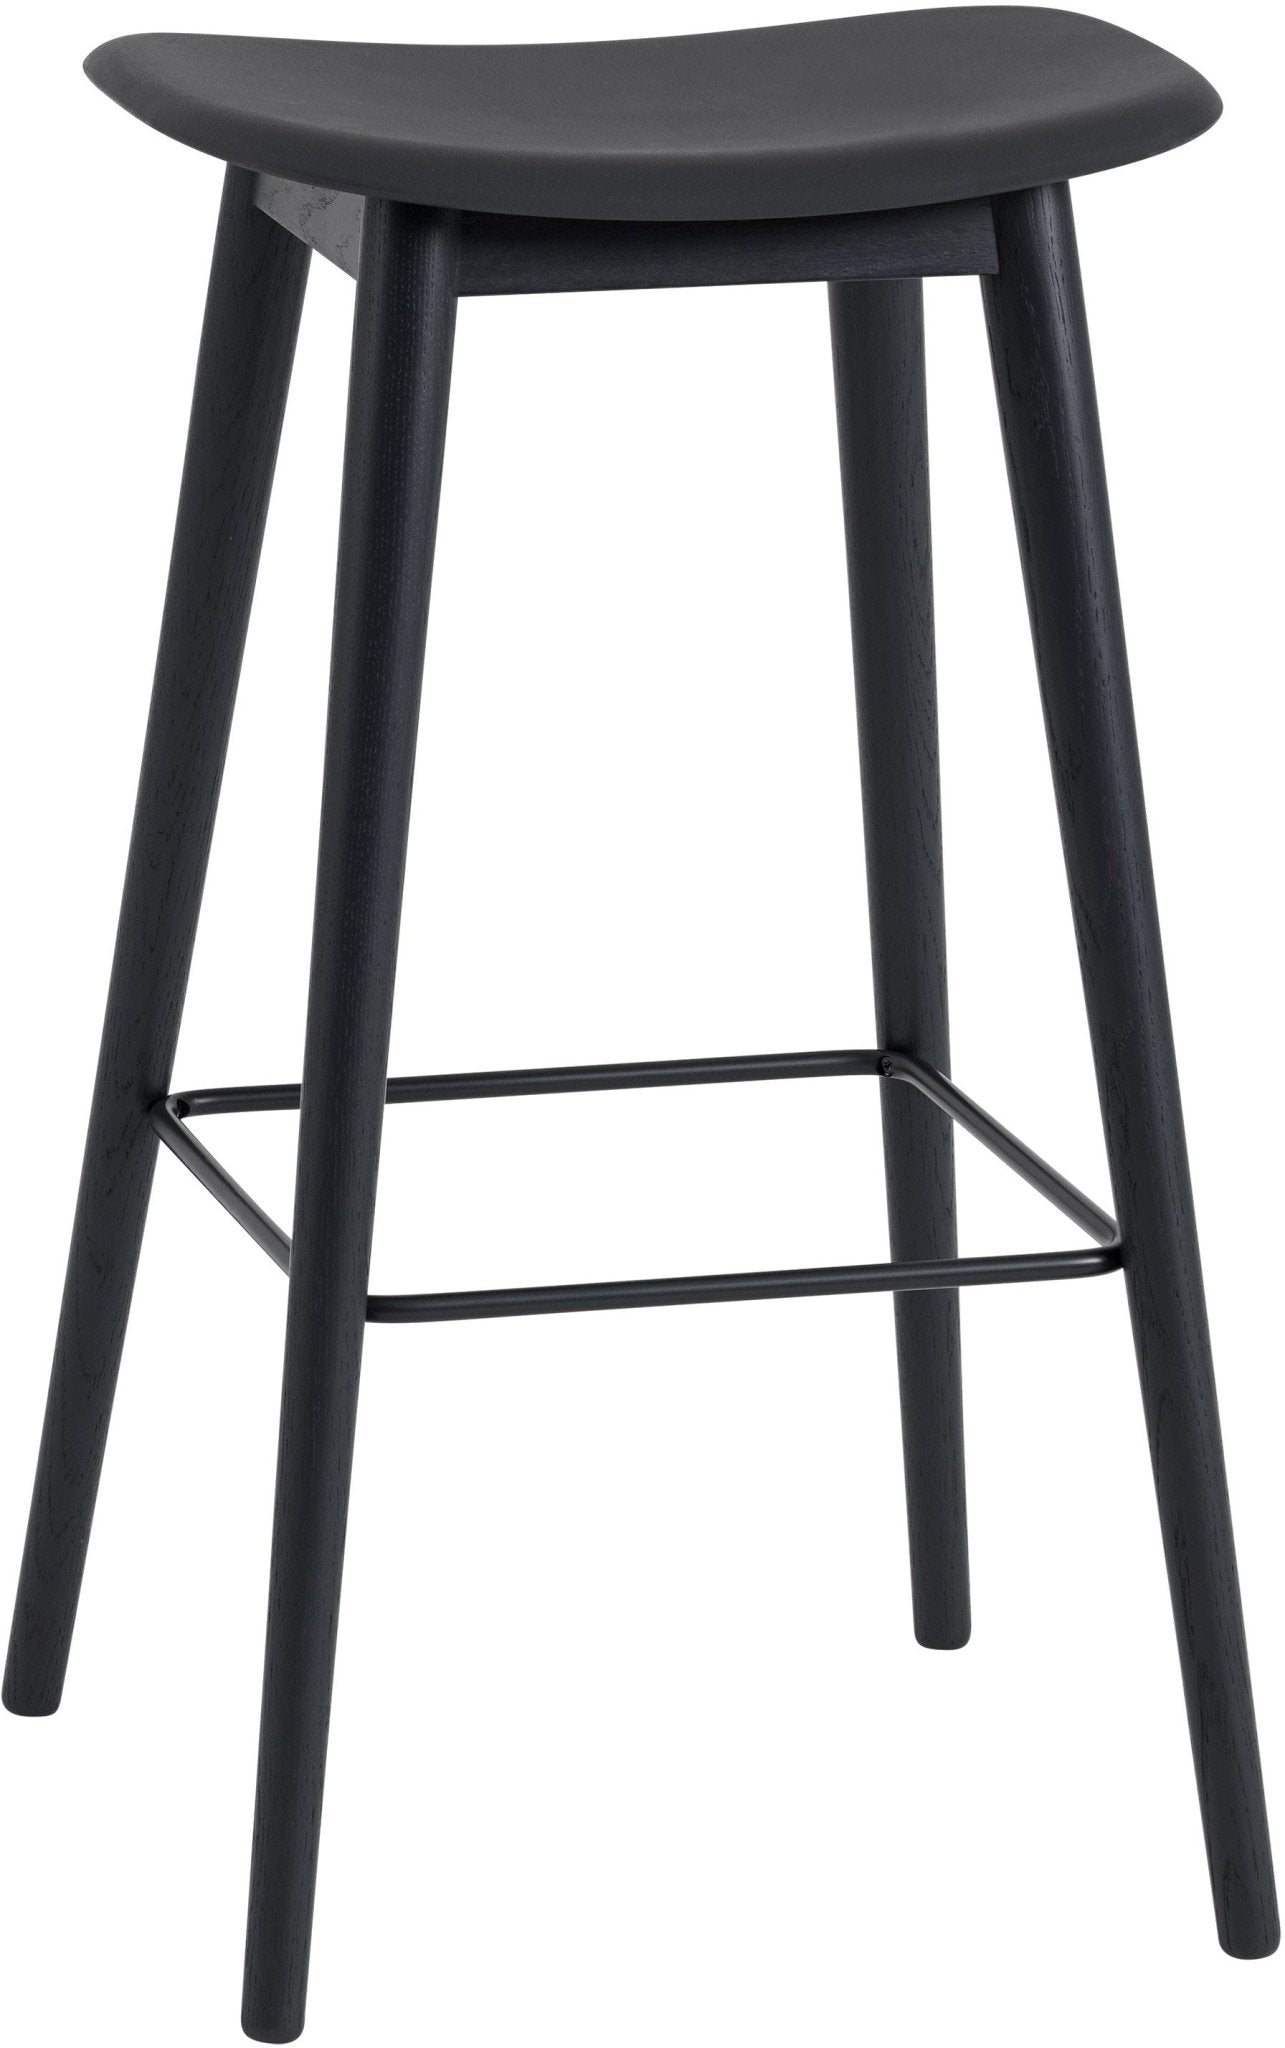 Fiber Stool Without Back - Wood Base - Black Seat & Black Base / Bar Height